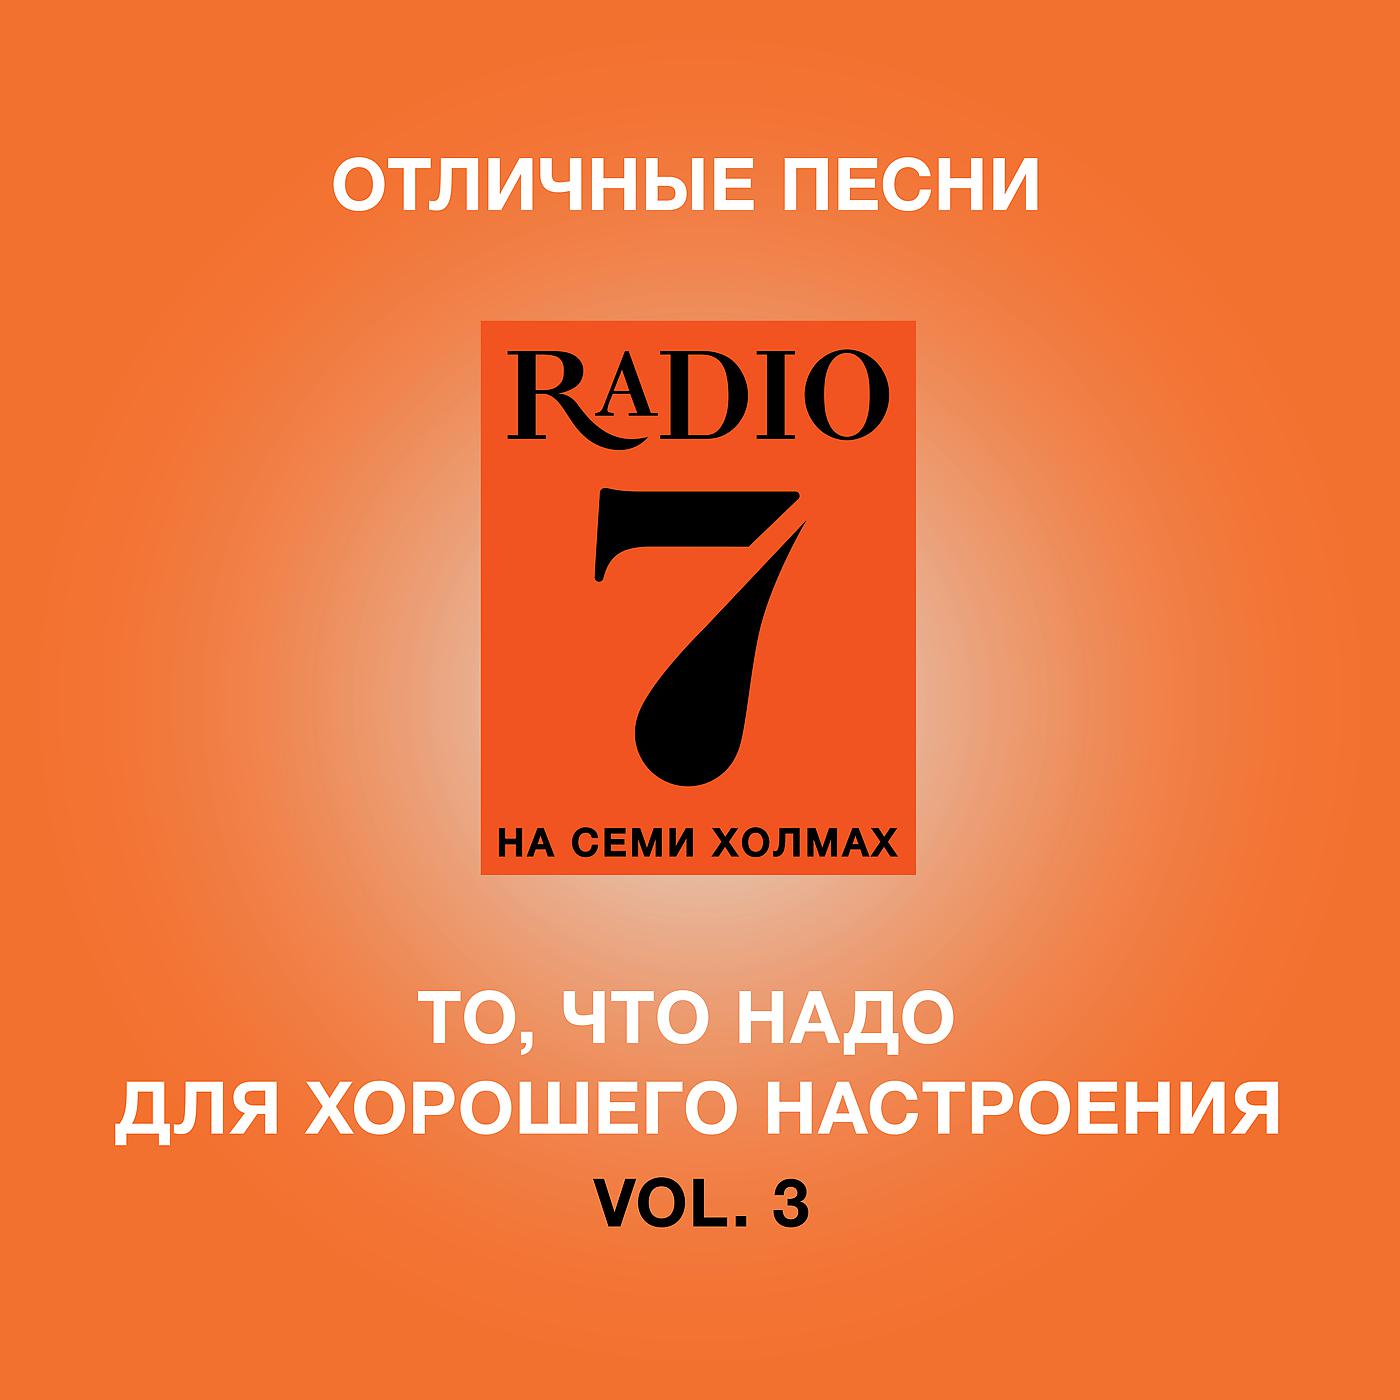 Музыка радио семь на семи холмах. Радио 7. Радио 7 на семи холмах. Радио 7 логотип. Радио 7 на семи холмах логотип.